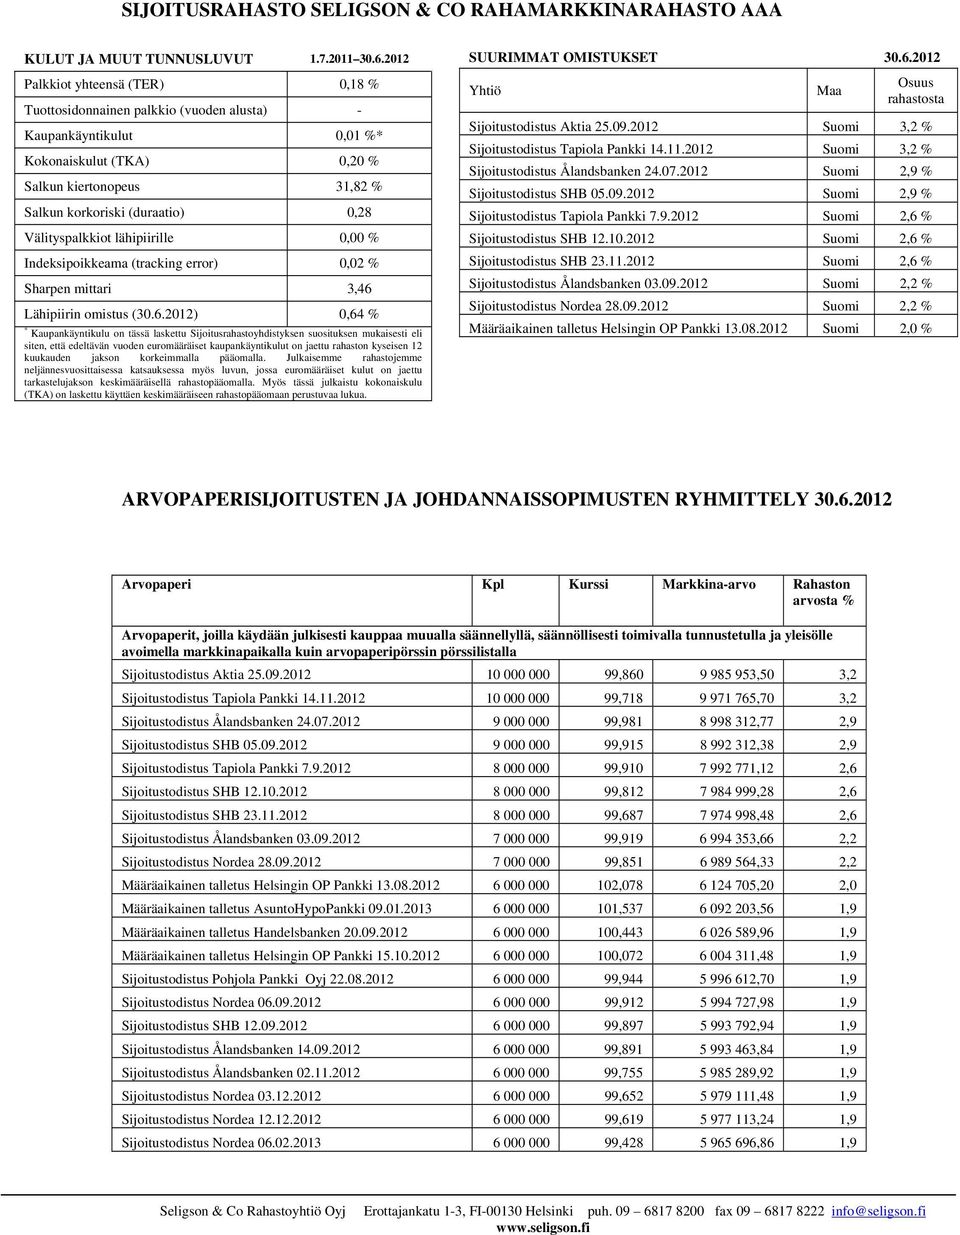 2012 Suomi 2,9 % Salkun kiertonopeus 31,82 % Sijoitustodistus SHB 05.09.2012 Suomi 2,9 % Salkun korkoriski (duraatio) 0,28 Sijoitustodistus Tapiola Pankki 7.9.2012 Suomi 2,6 % Välityspalkkiot lähipiirille 0,00 % Sijoitustodistus SHB 12.